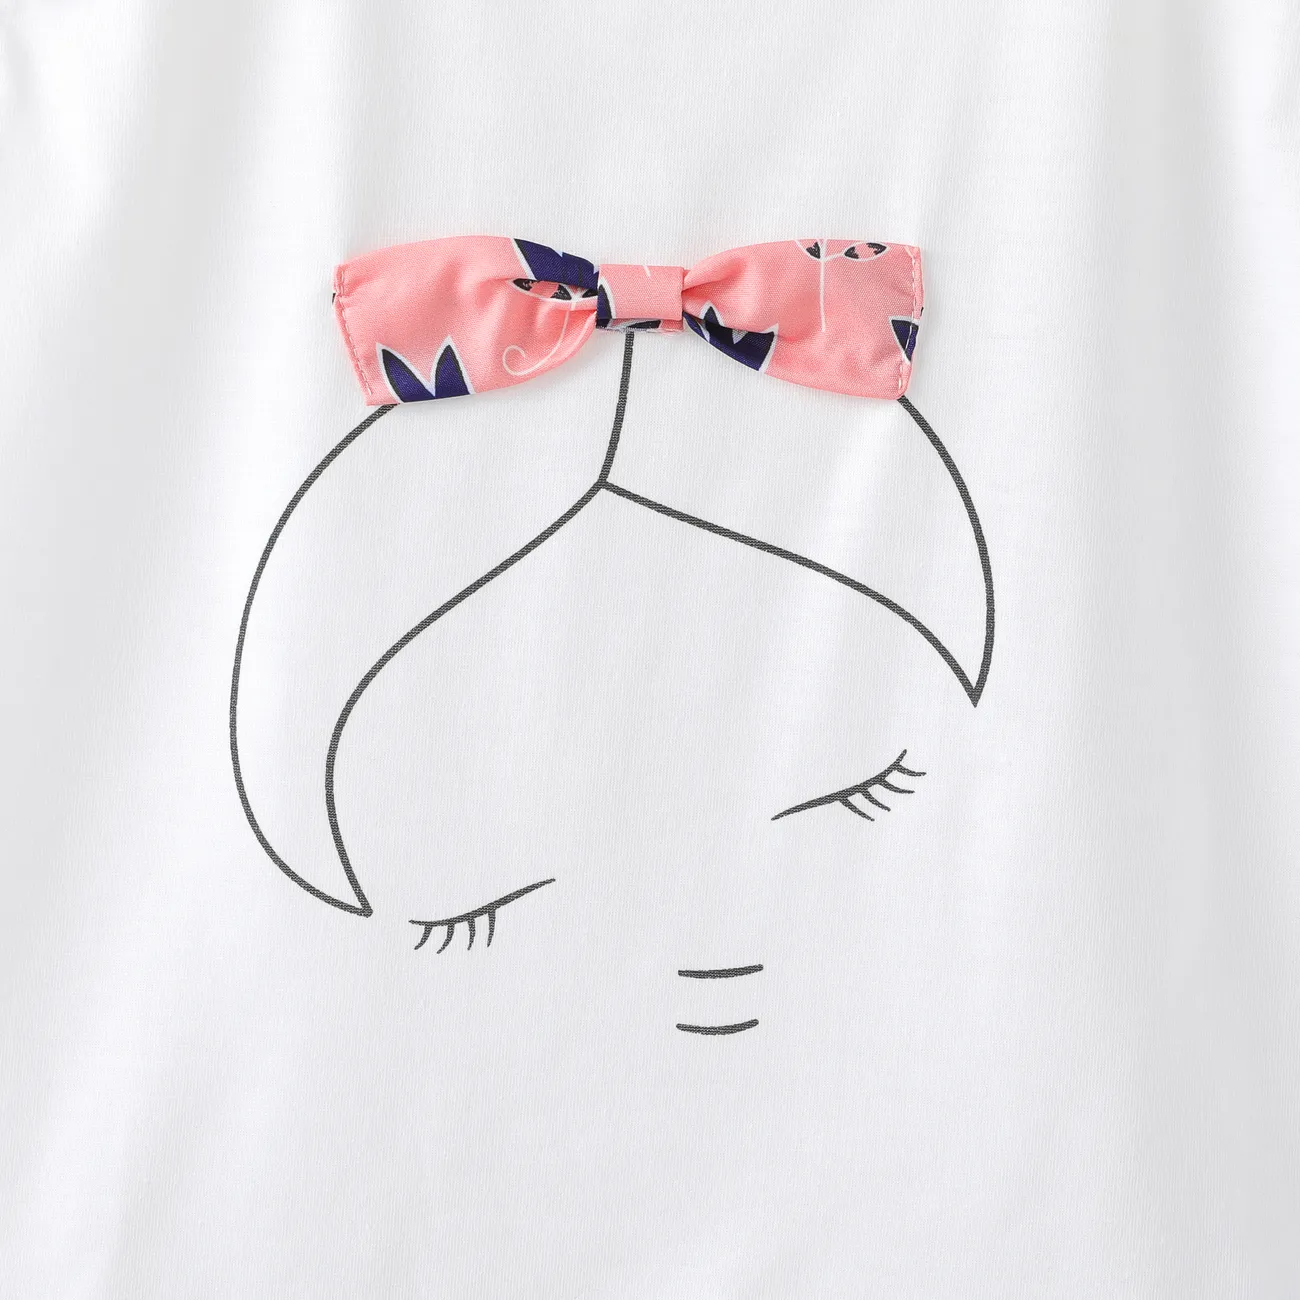 2pcs Kid Girl Bowknot Design Sleeveless Tee and Allover Print Shorts Set Pink big image 1